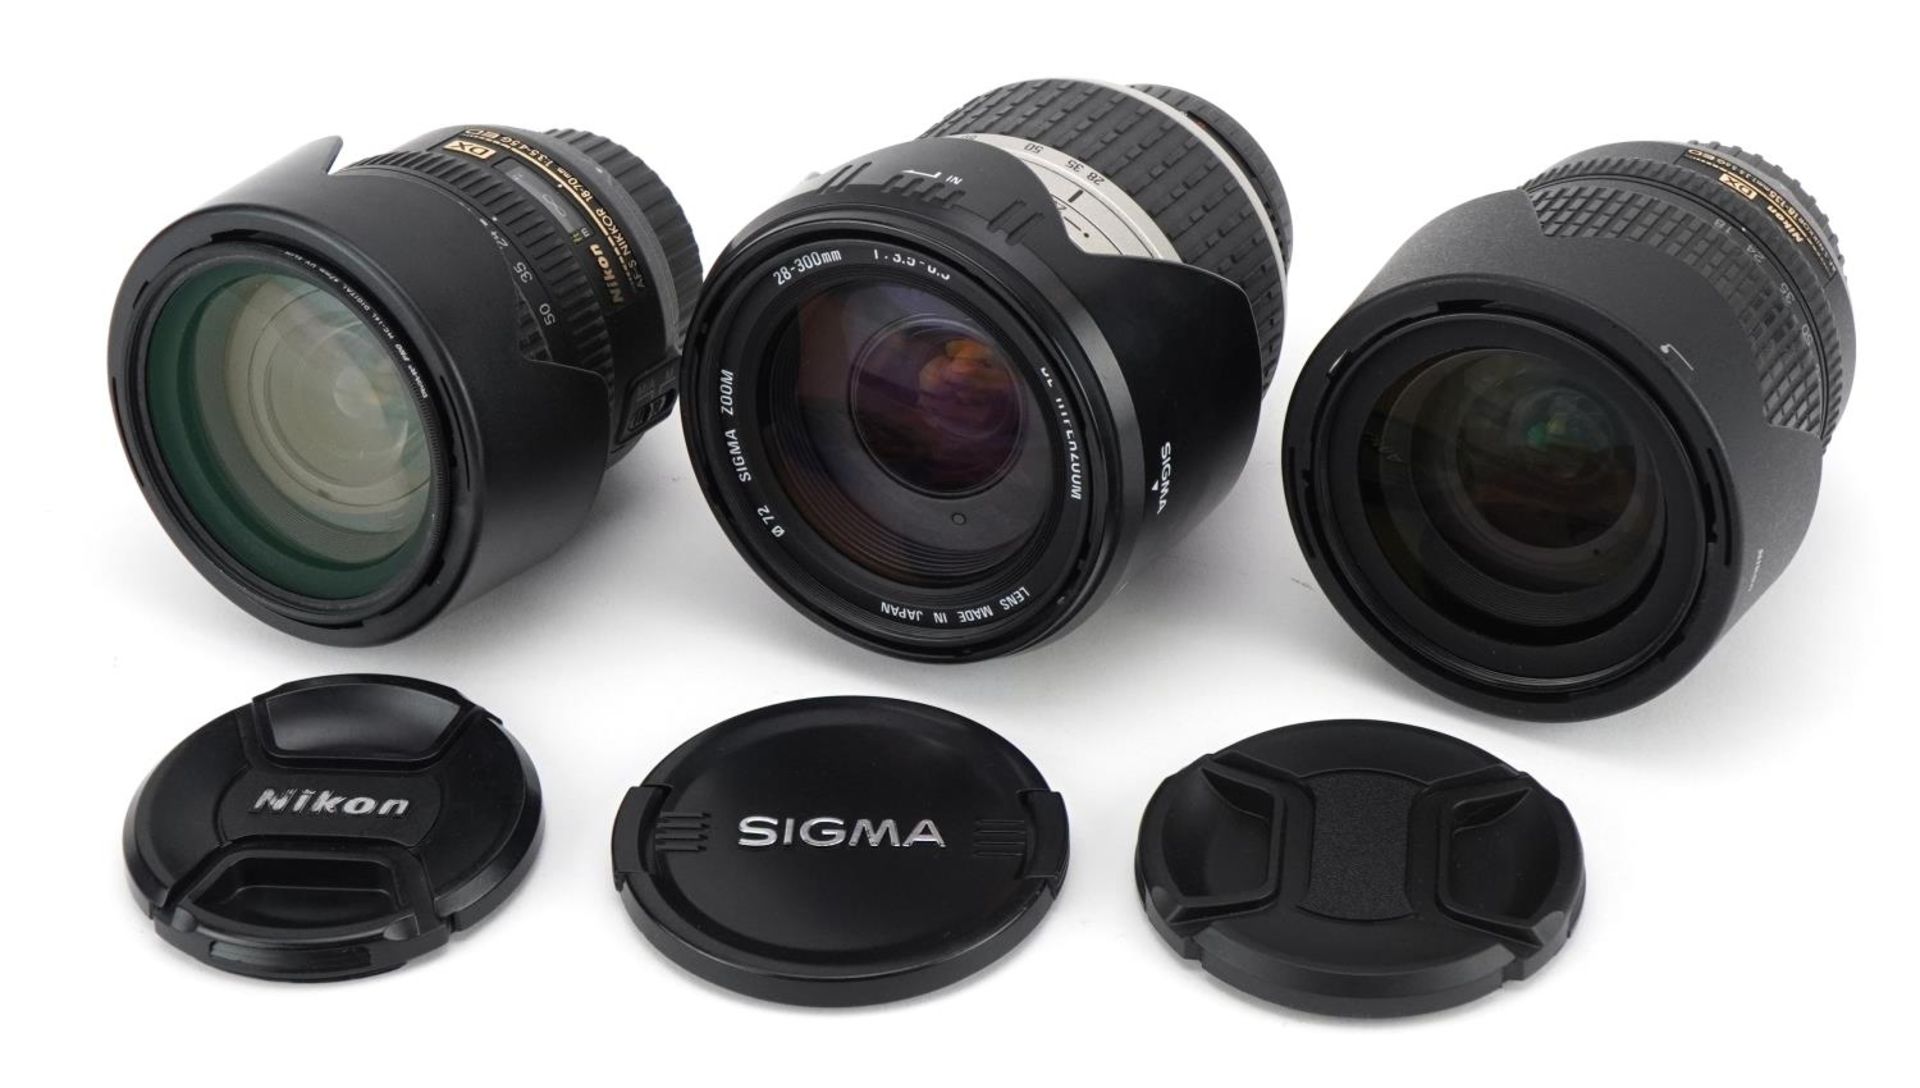 Three camera lenses comprising Sigma 28-300mm, Nikon 18-70mm and Nikon 18-135mm